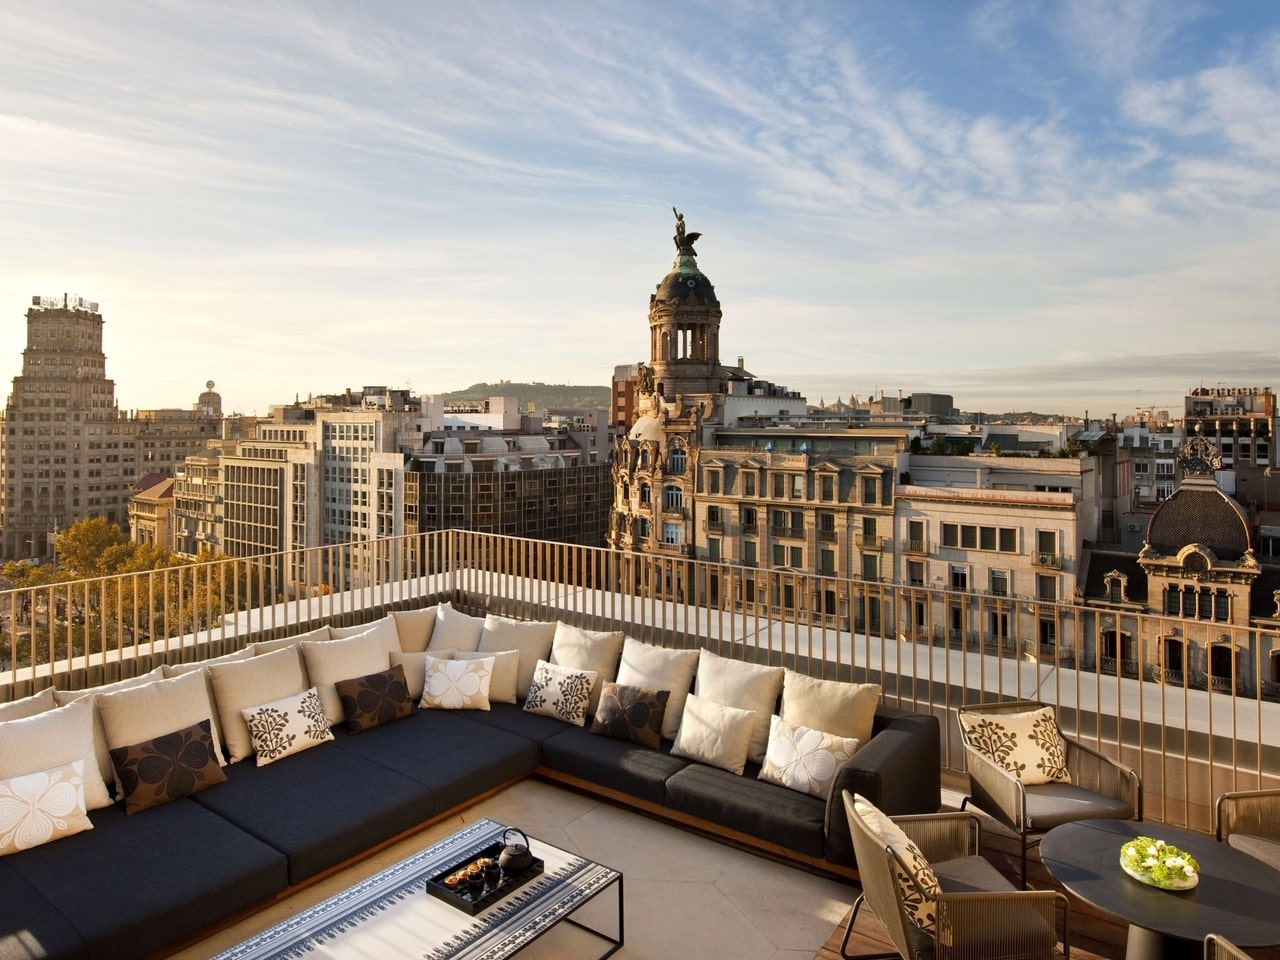 O terraço permite variada spossibilidades estéticas e funcionais (Foto: Divulgação)